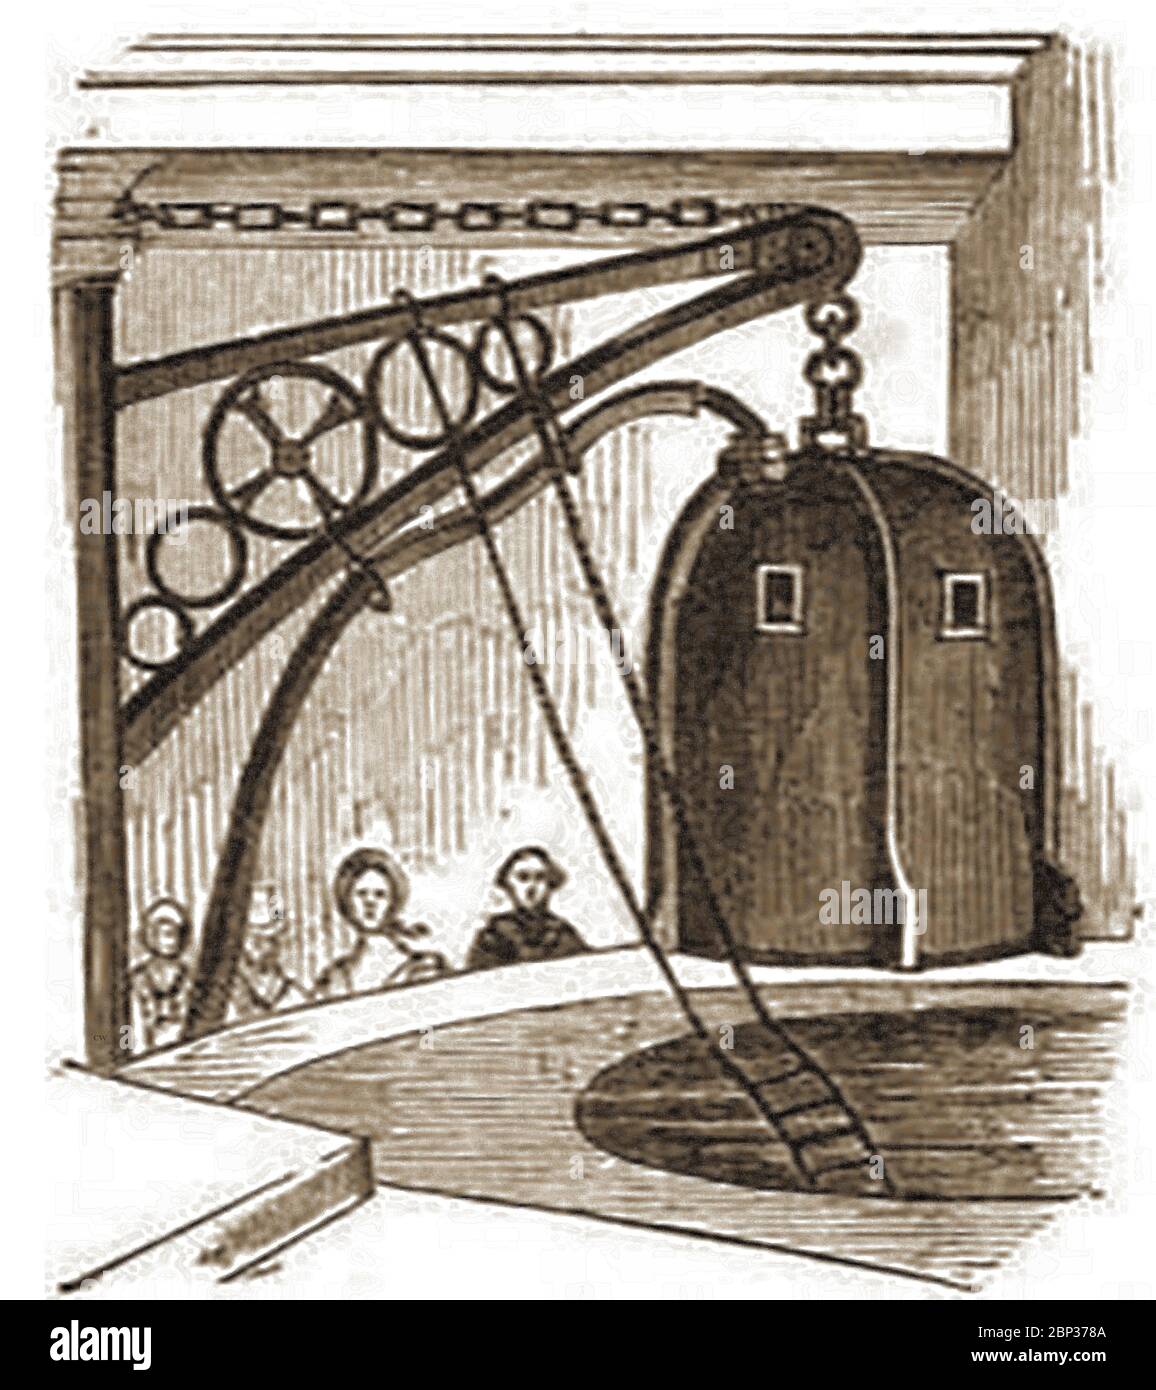 Ein historischer Stich, der den Franzosen Dr. Payerne's Diving Bell Invention zeigt, wurde 1842 in England am London Institute of Science demonstriert. Herr Hardiman diente als Payernes Assistent beim Tauchen des Wracks des Royal George. Der Einsatz des 'Mr Dean's' Tauchhelms wurde in einer Reihe von Experimenten verwendet. Stockfoto